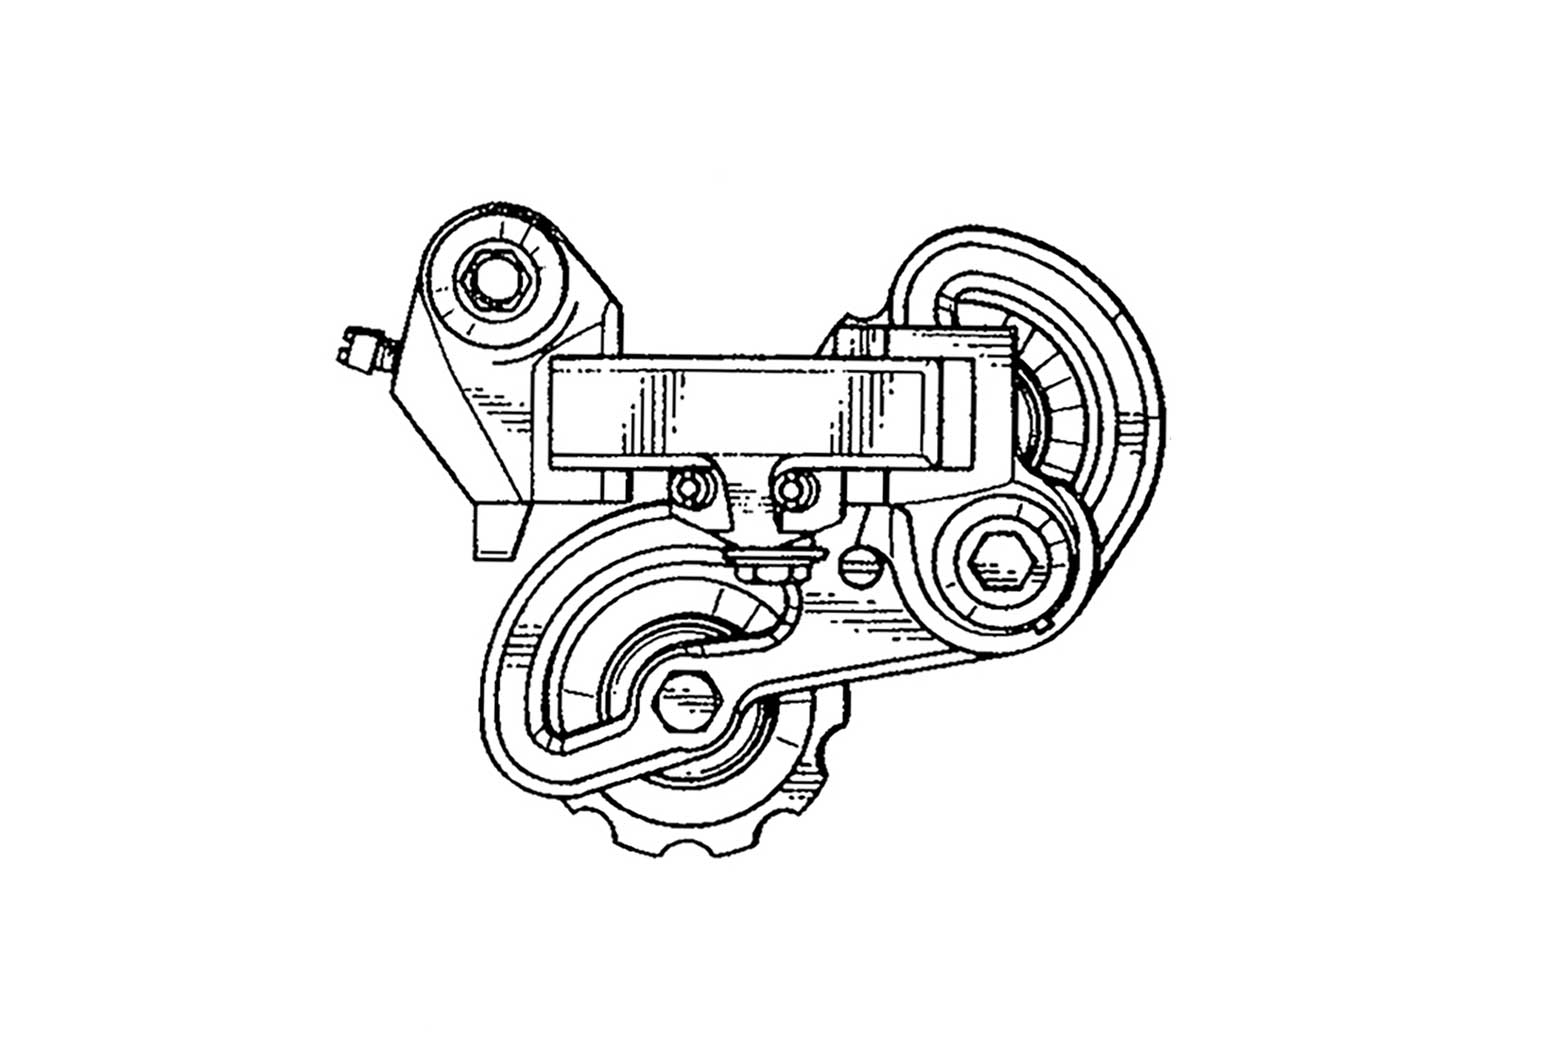 US Design Patent 283,415 main image